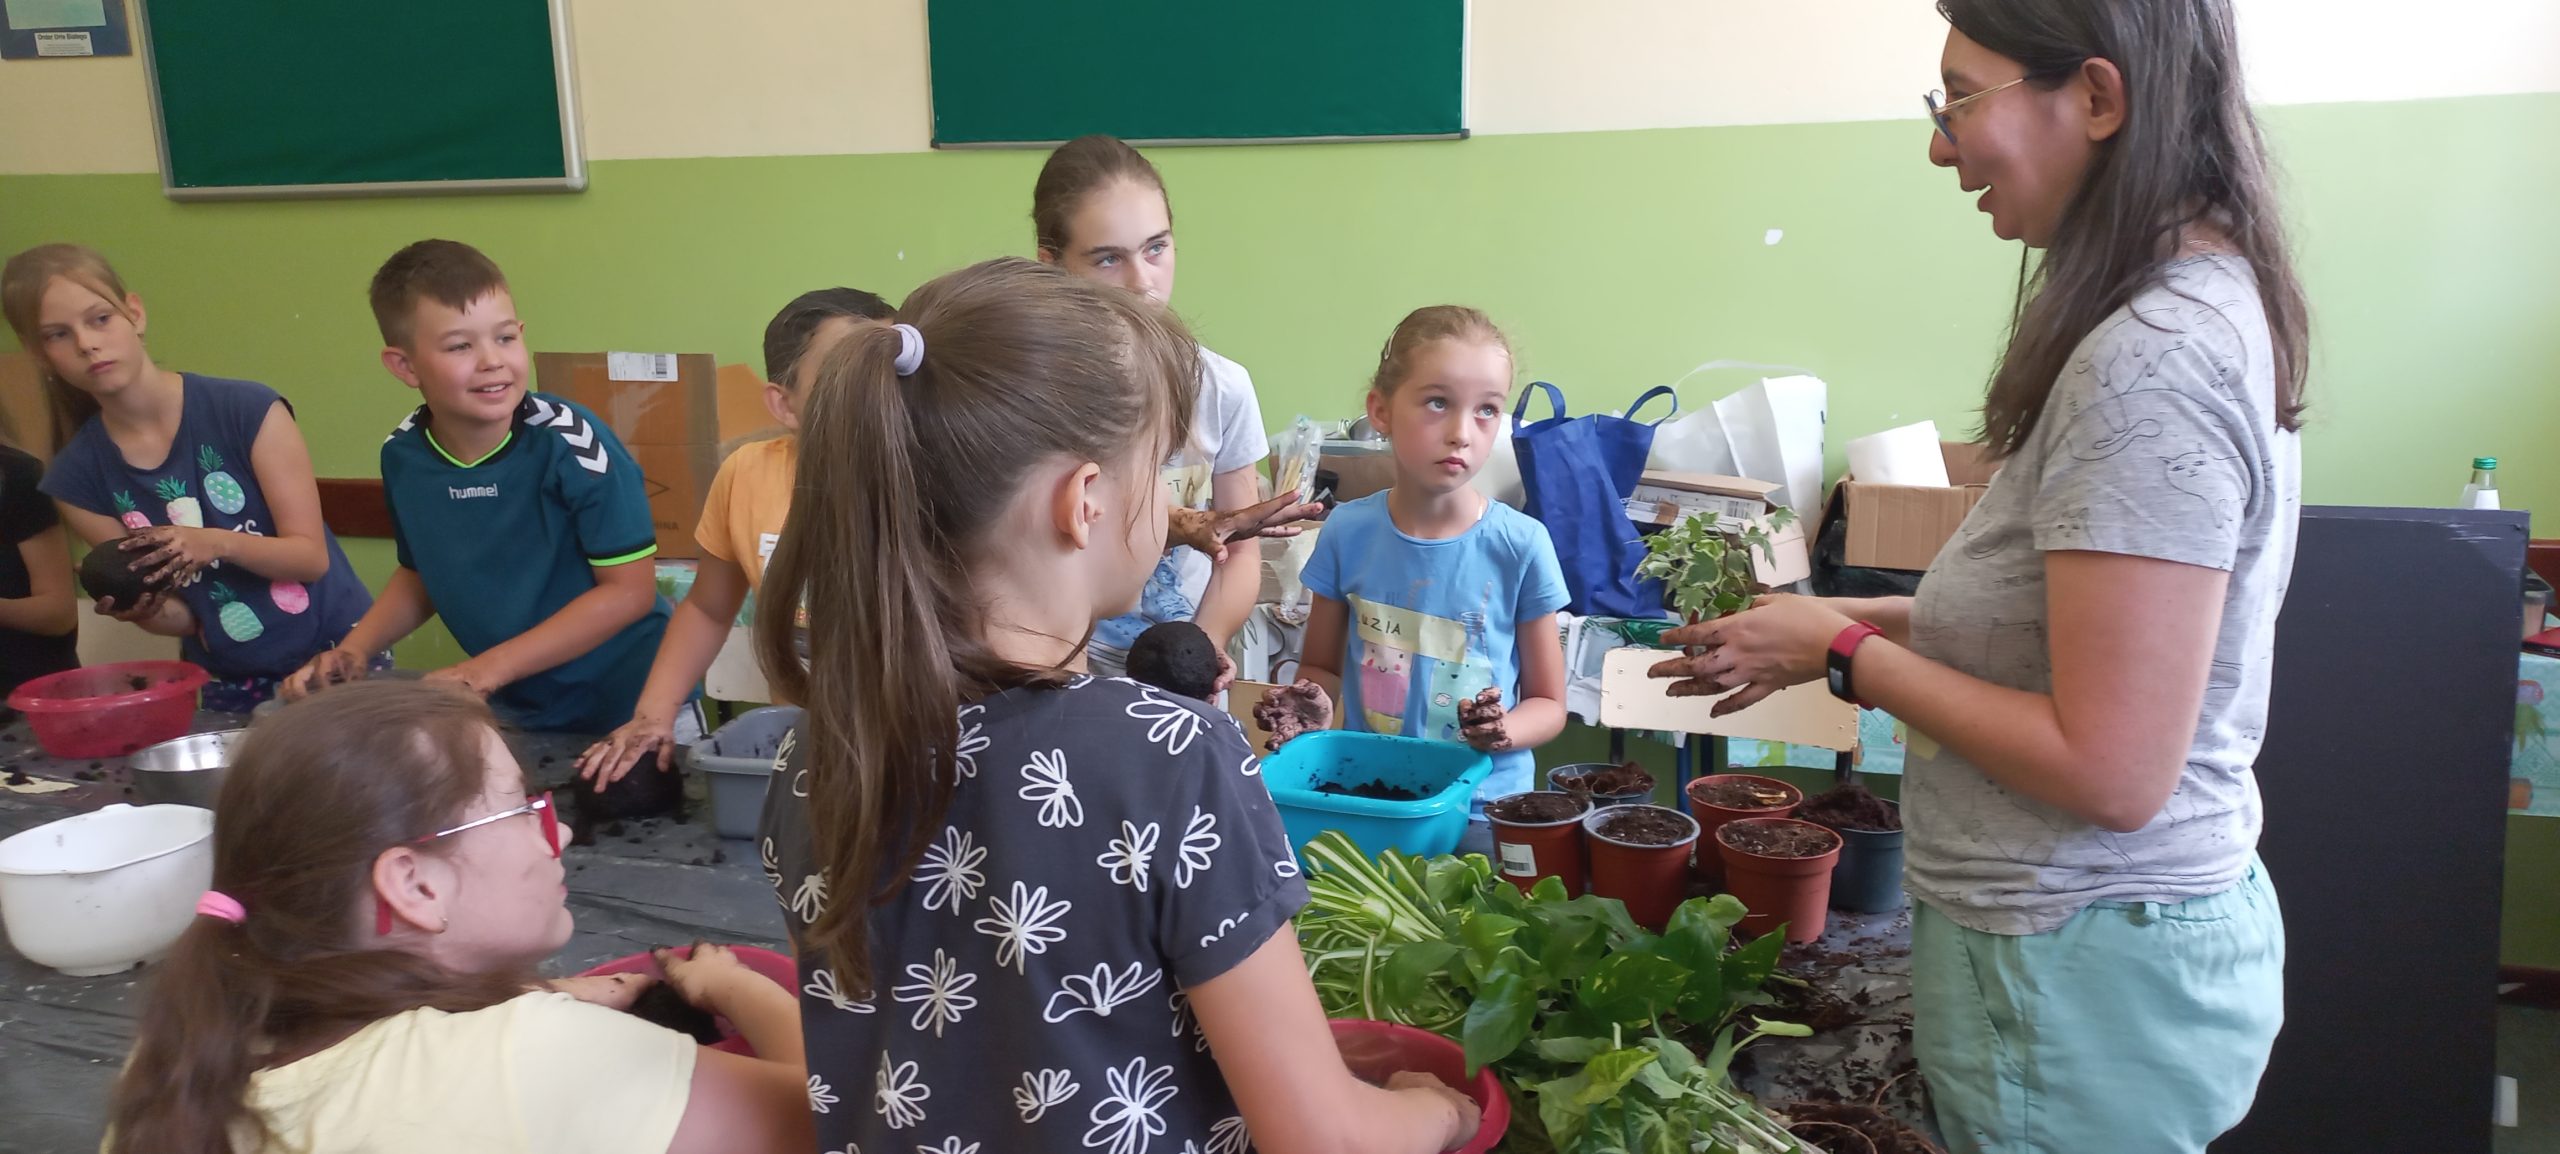 prowadząca stoi przy stole i tłumaczy dzieciom jak robić roślinne ozdoby